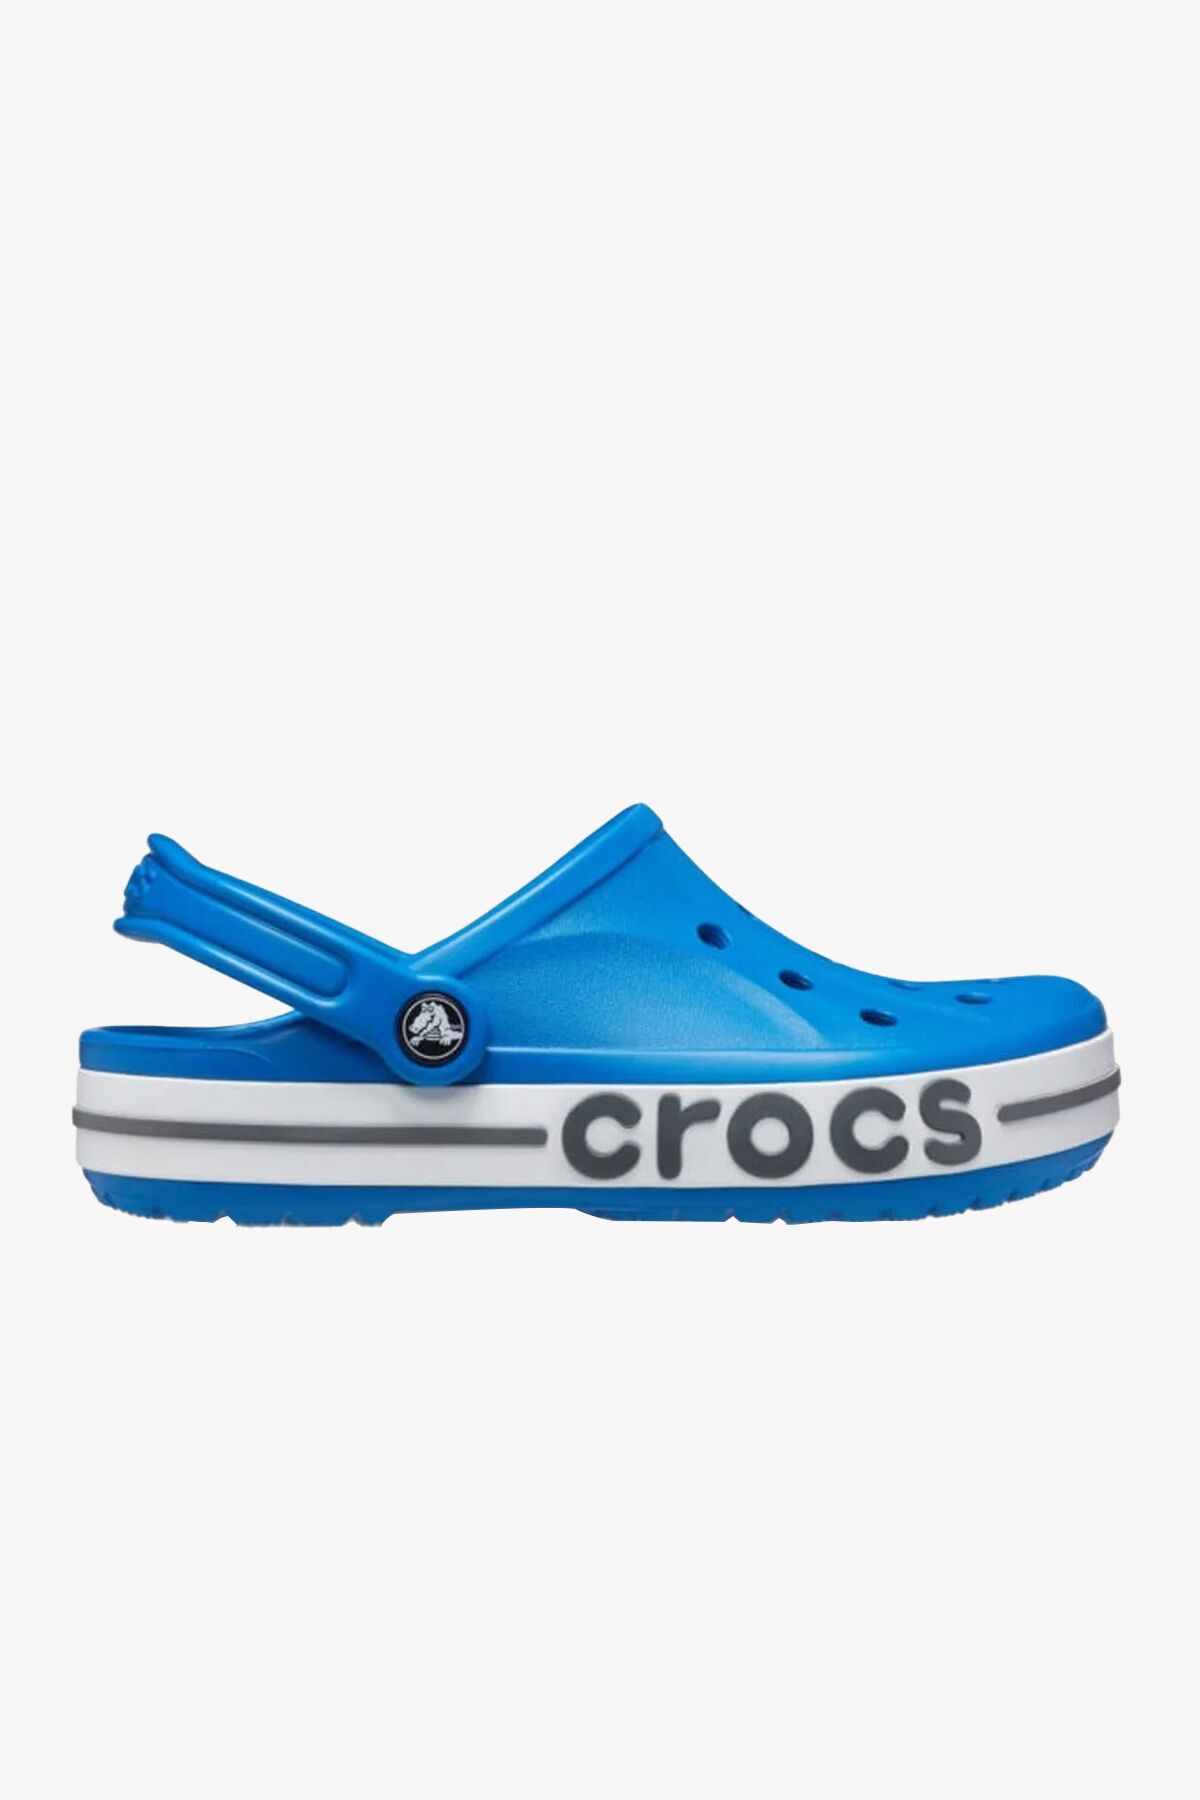 Crocs 205089 Bayaband Clog Unisex Sandalet